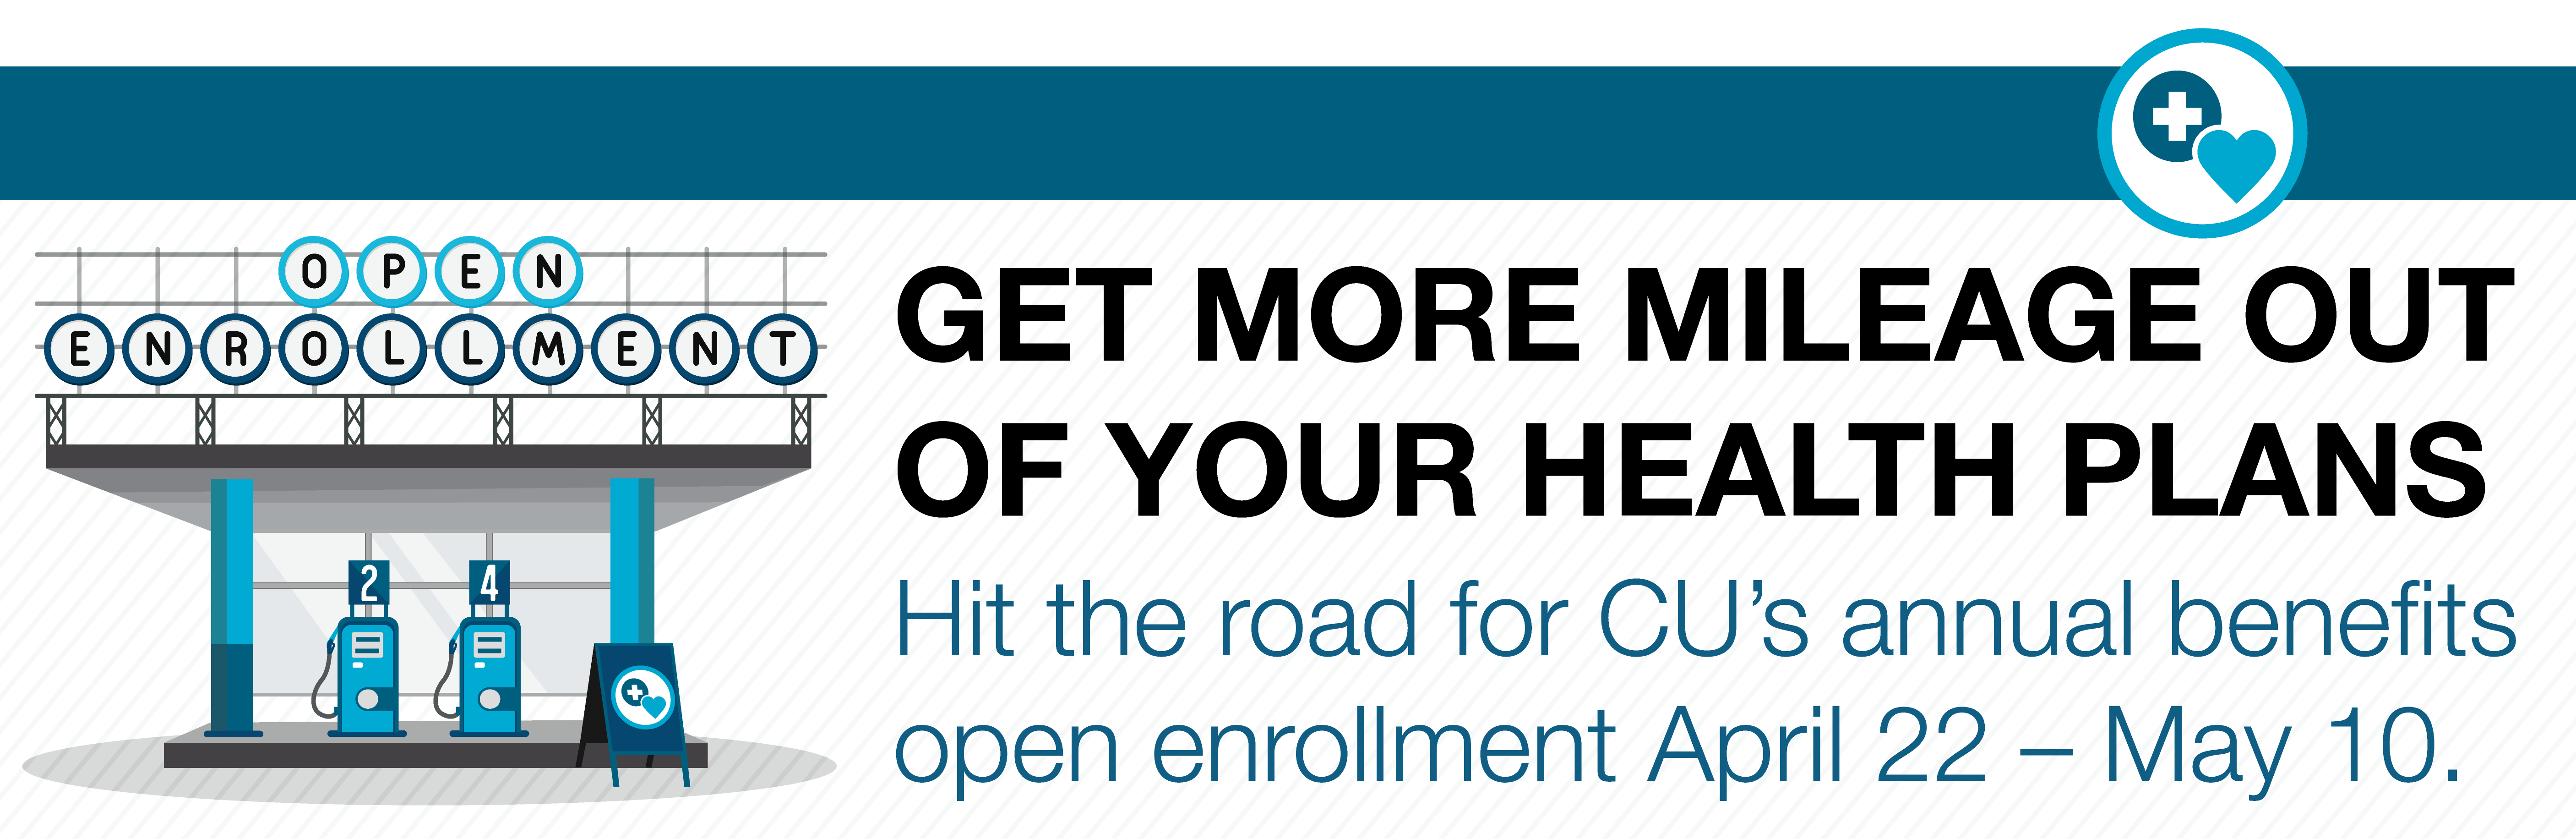 CU's annual benefits open enrollment runs April 22 - May 10